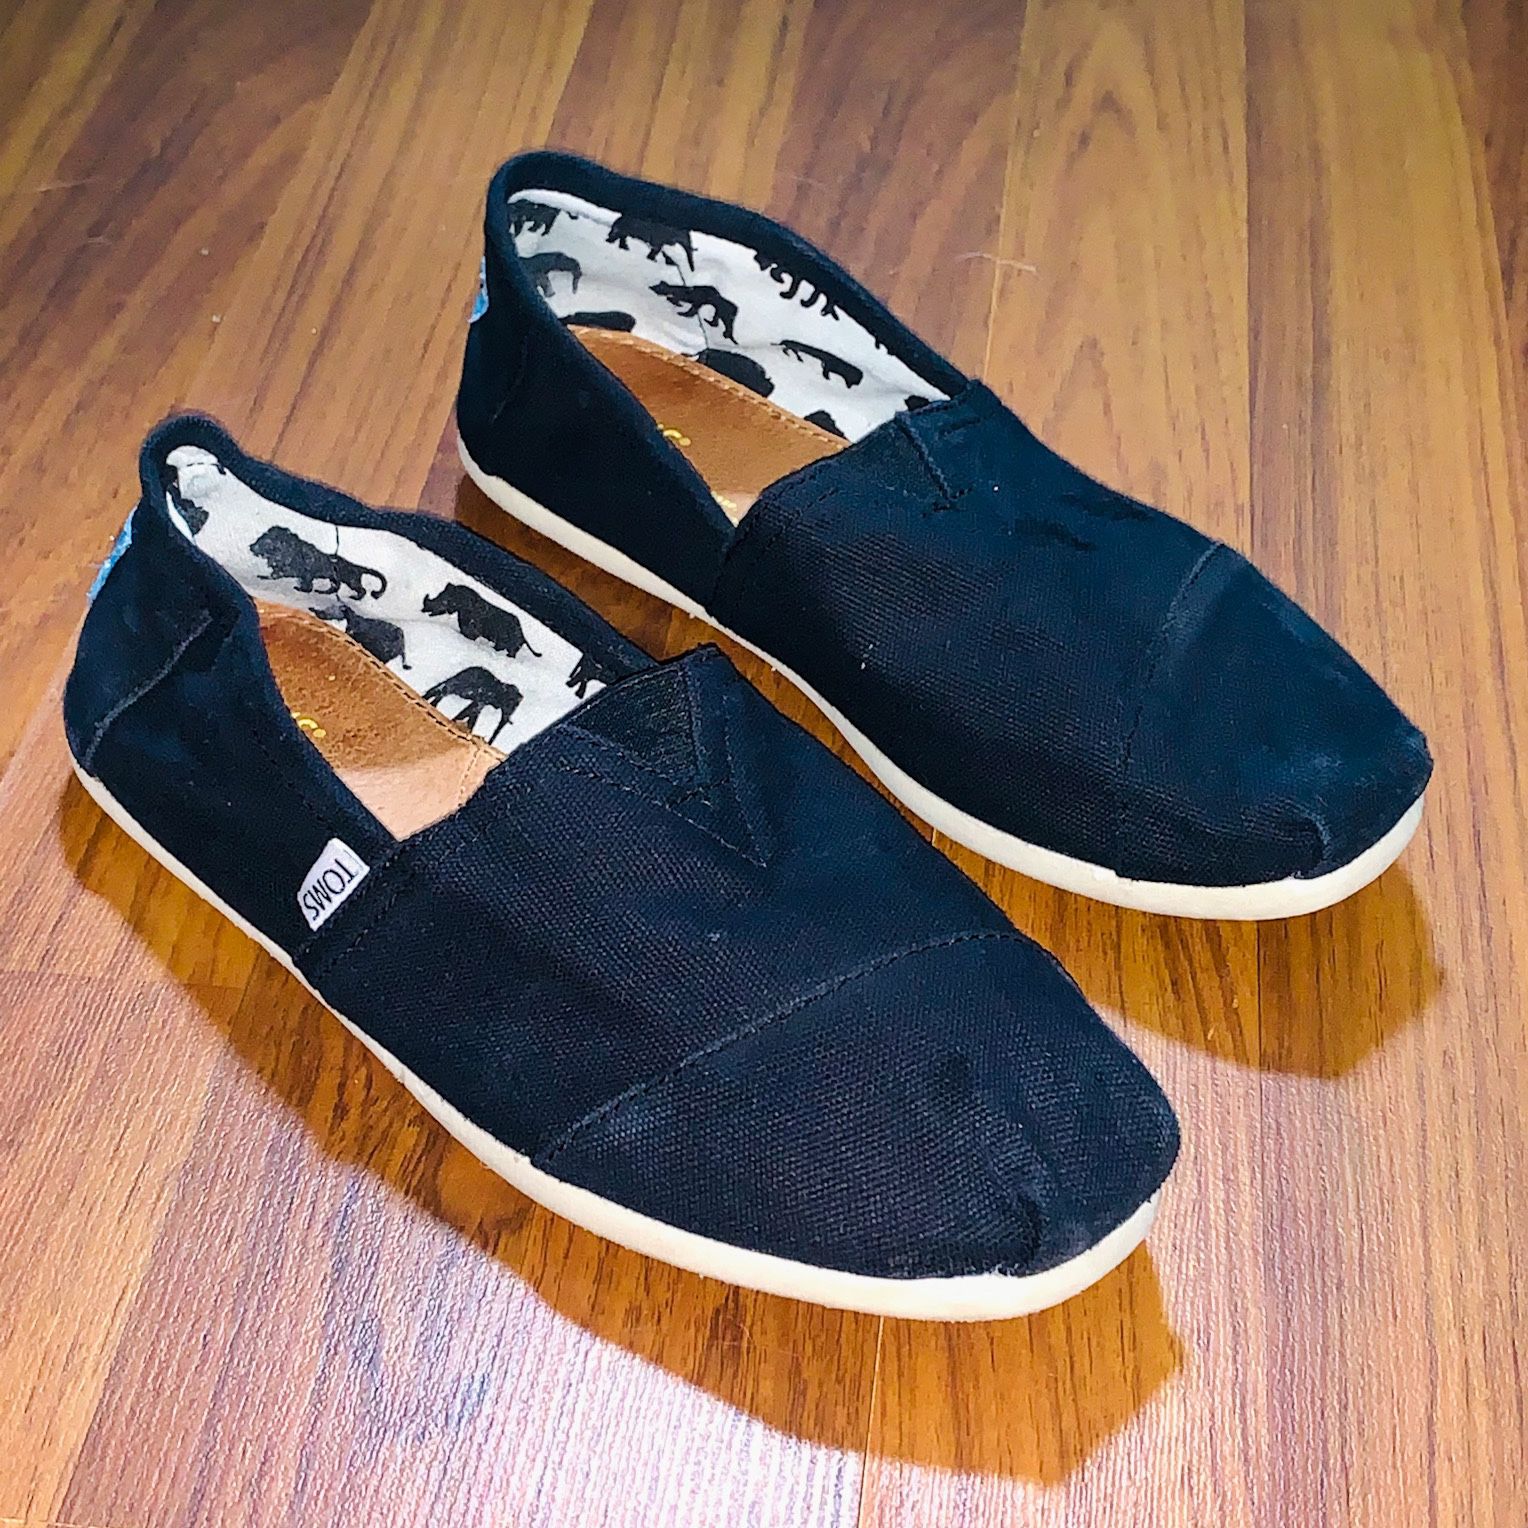 Toms Alpargata Unisex Black Slip Ons Shoes Men’s size 8.5/Women’s size 6